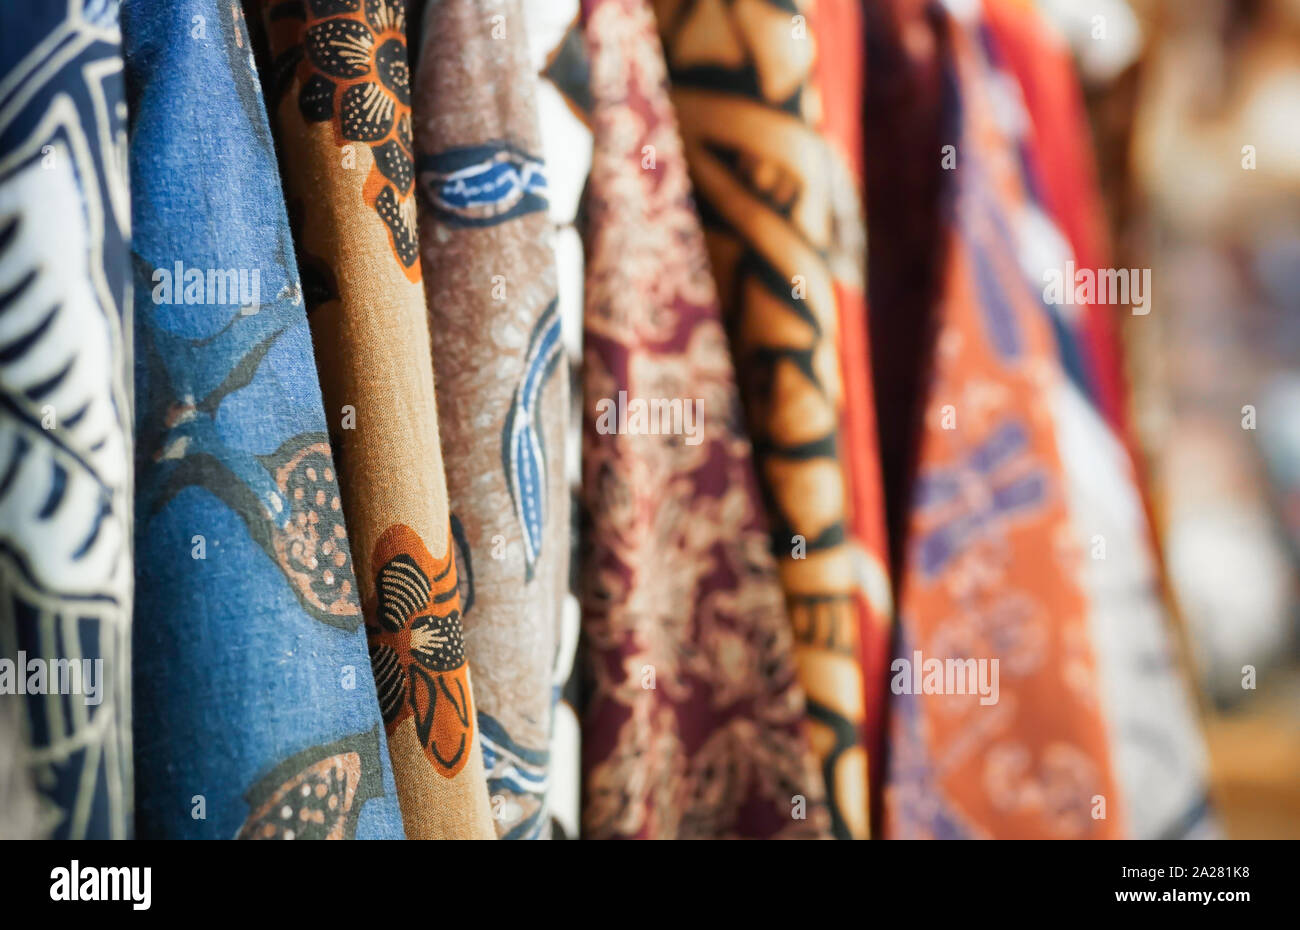 Javanese batik clothing at a store. Stock Photo